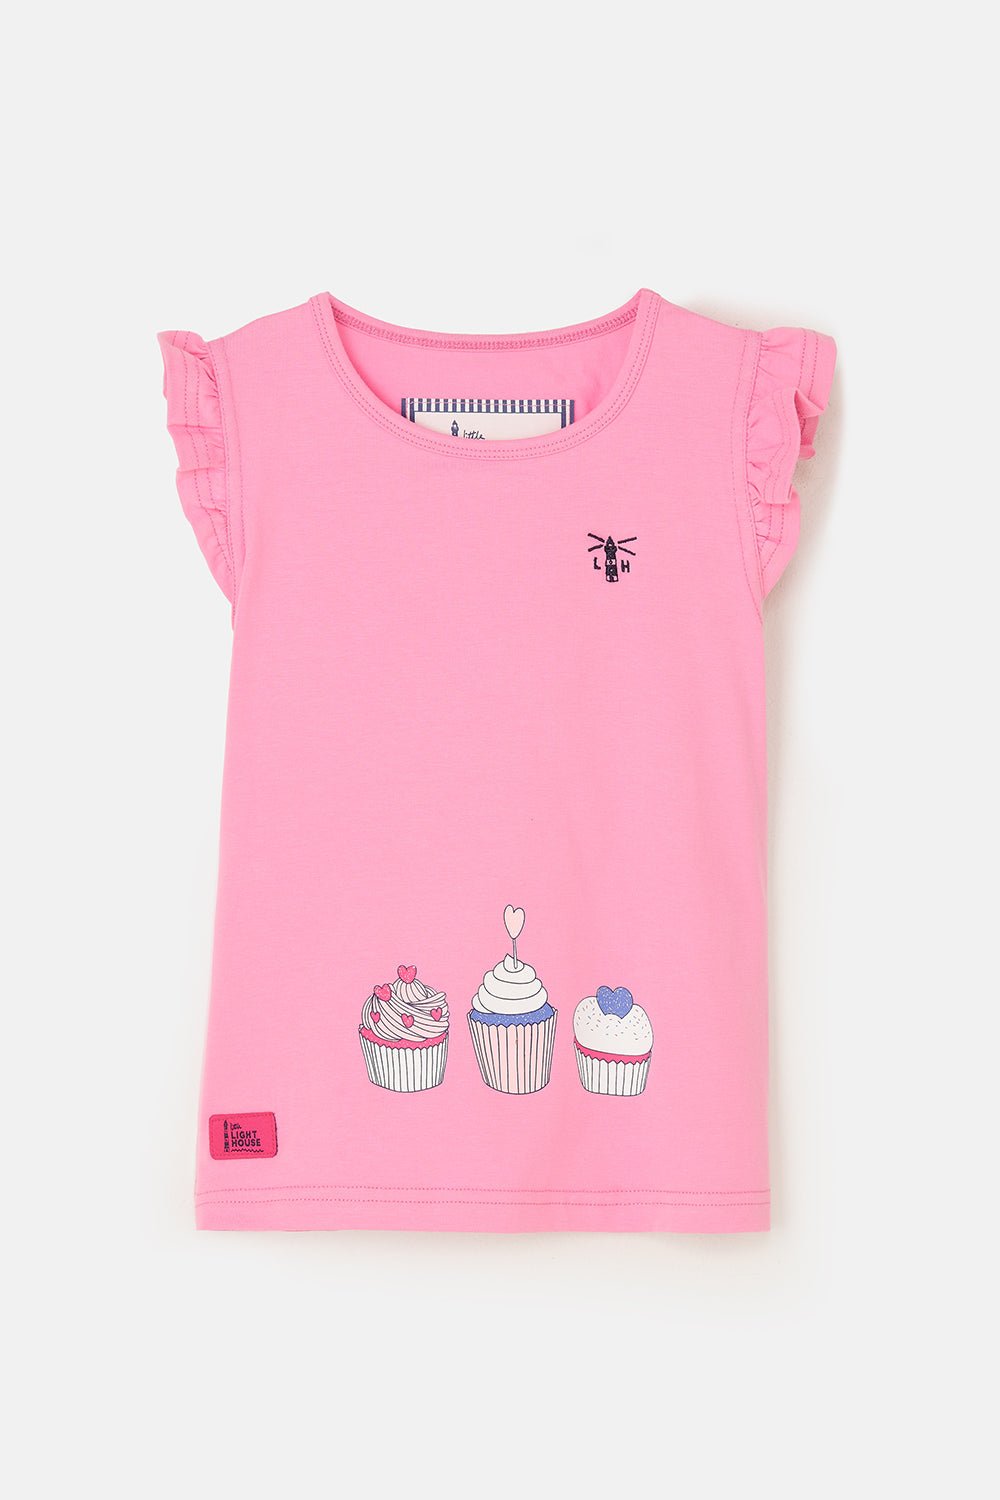 Causeway girls' swing t-shirt, Cupcake Print